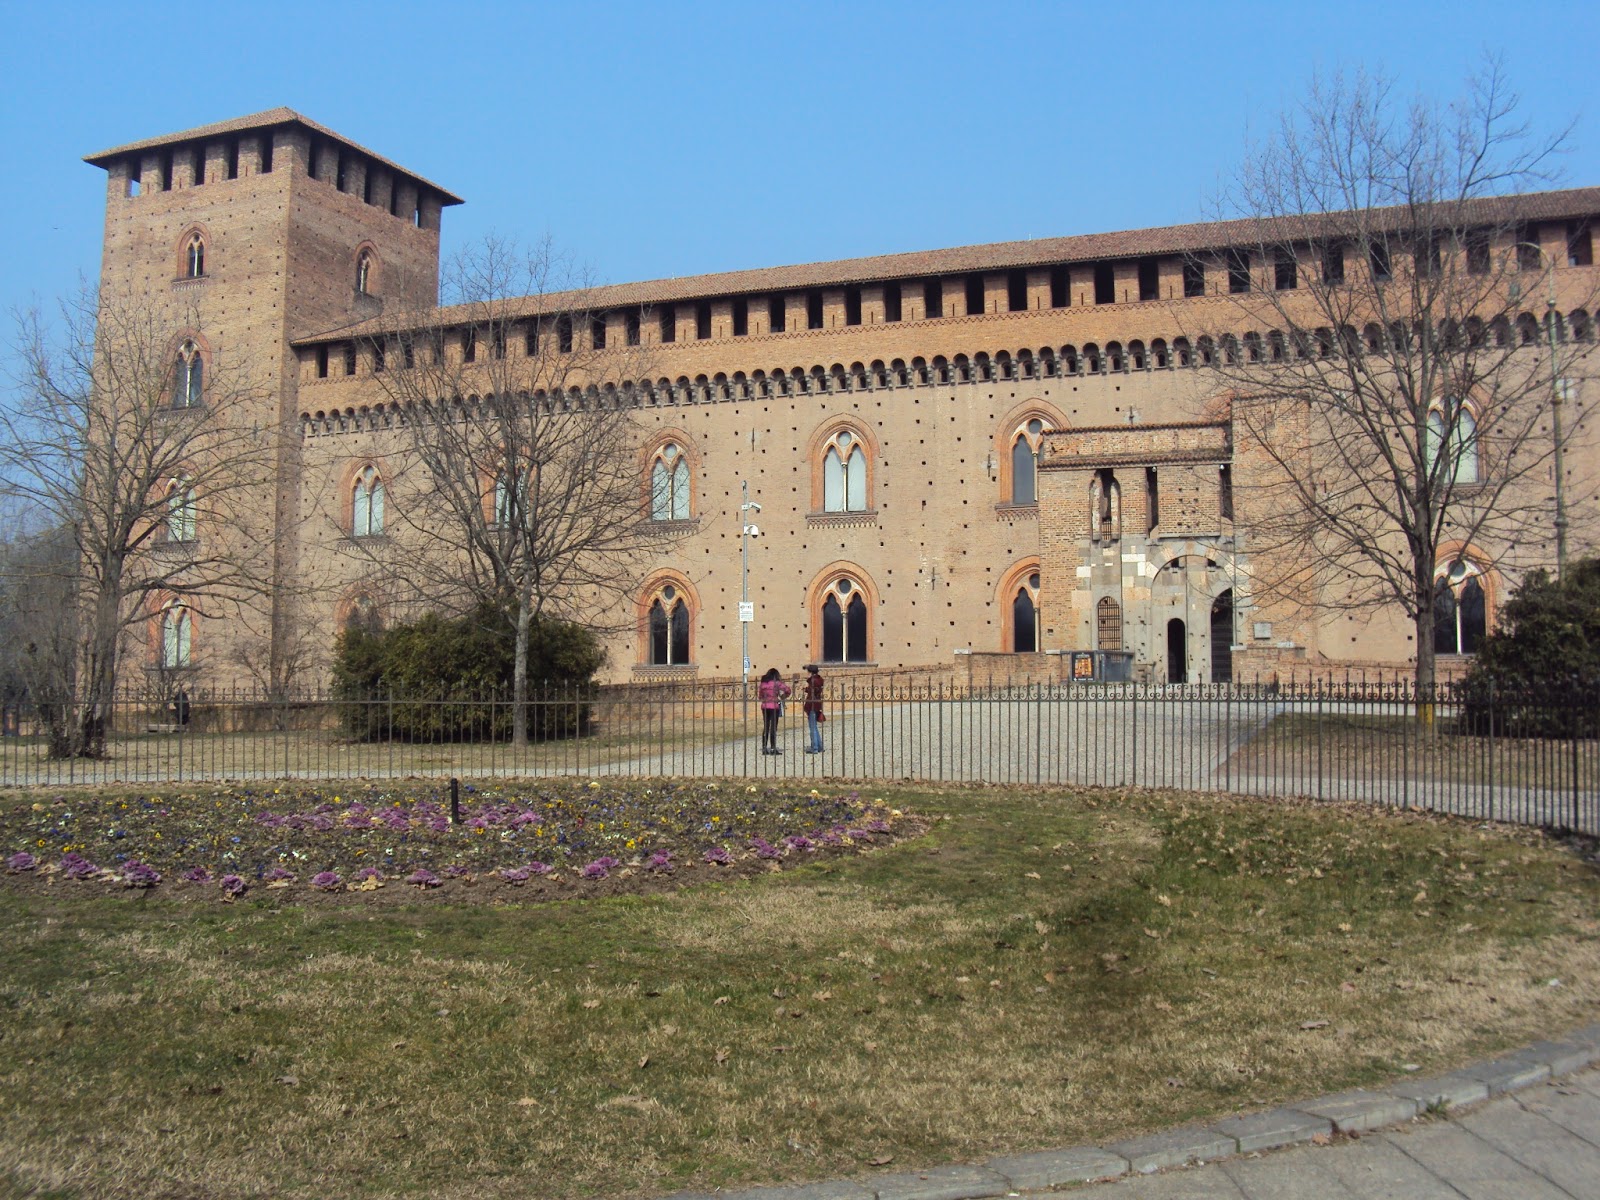 Il Castello Visconteo di Pavia | I LOVE TRAVEL